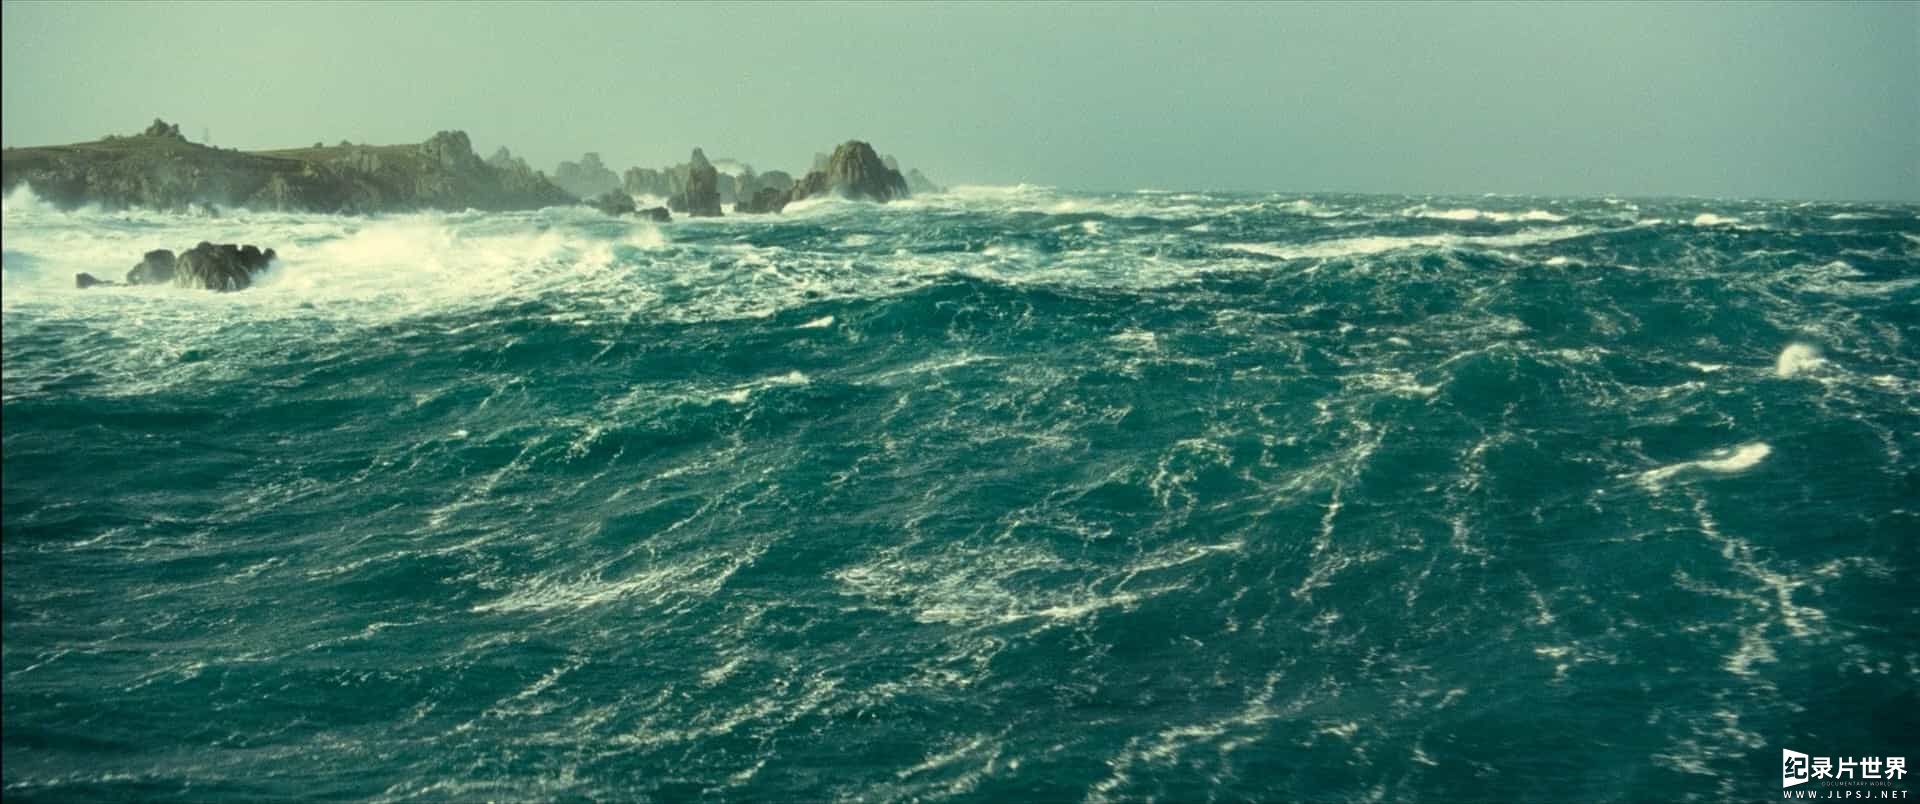 迪士尼自然纪录片《海洋 Océans》法语外挂中字